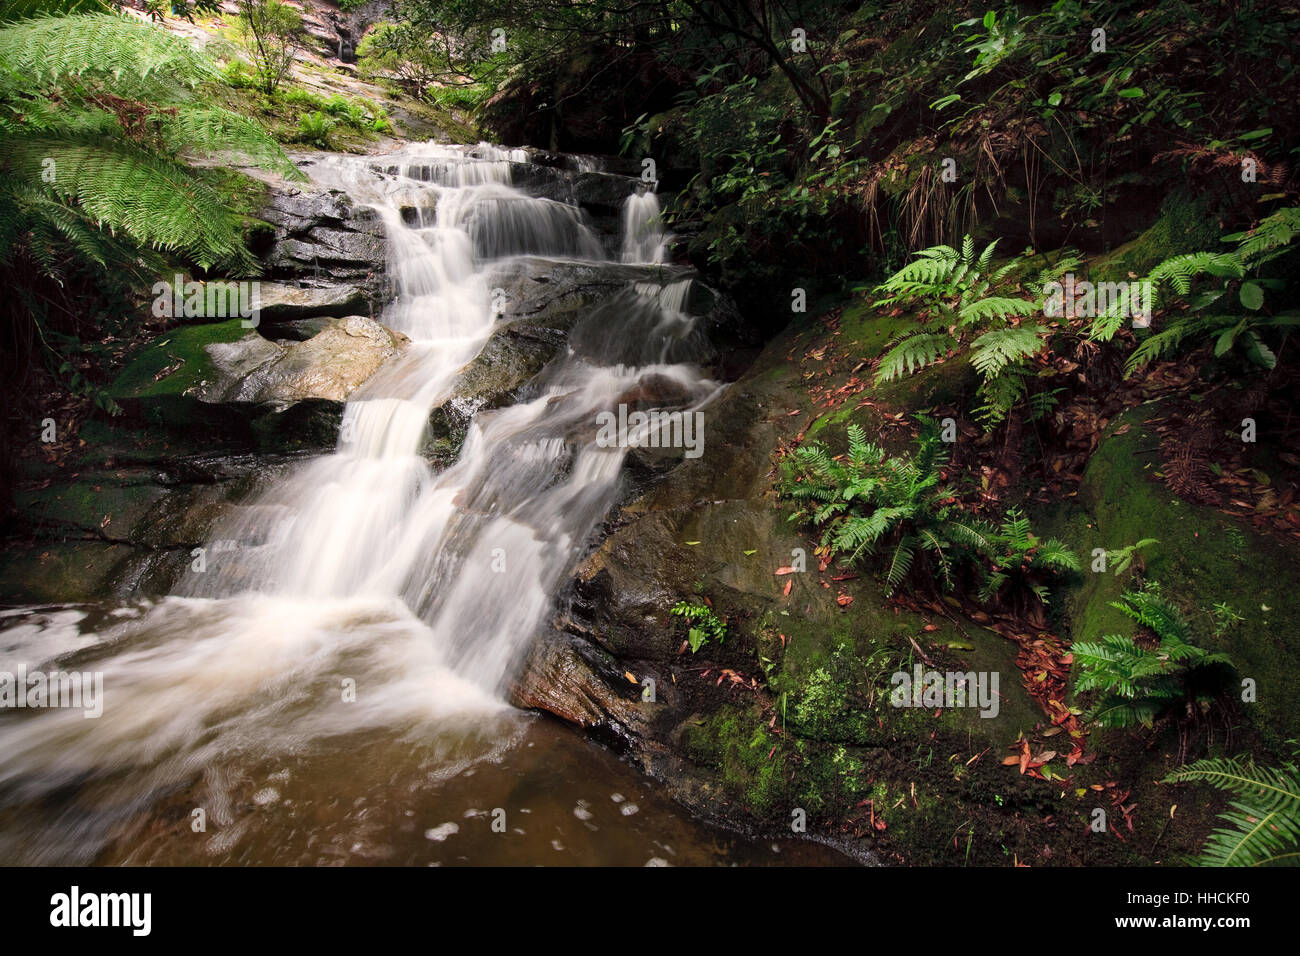 Stream Kaskaden hinunter einen felsigen Abhang in einem australischen gemäßigten Regenwald. Stockfoto